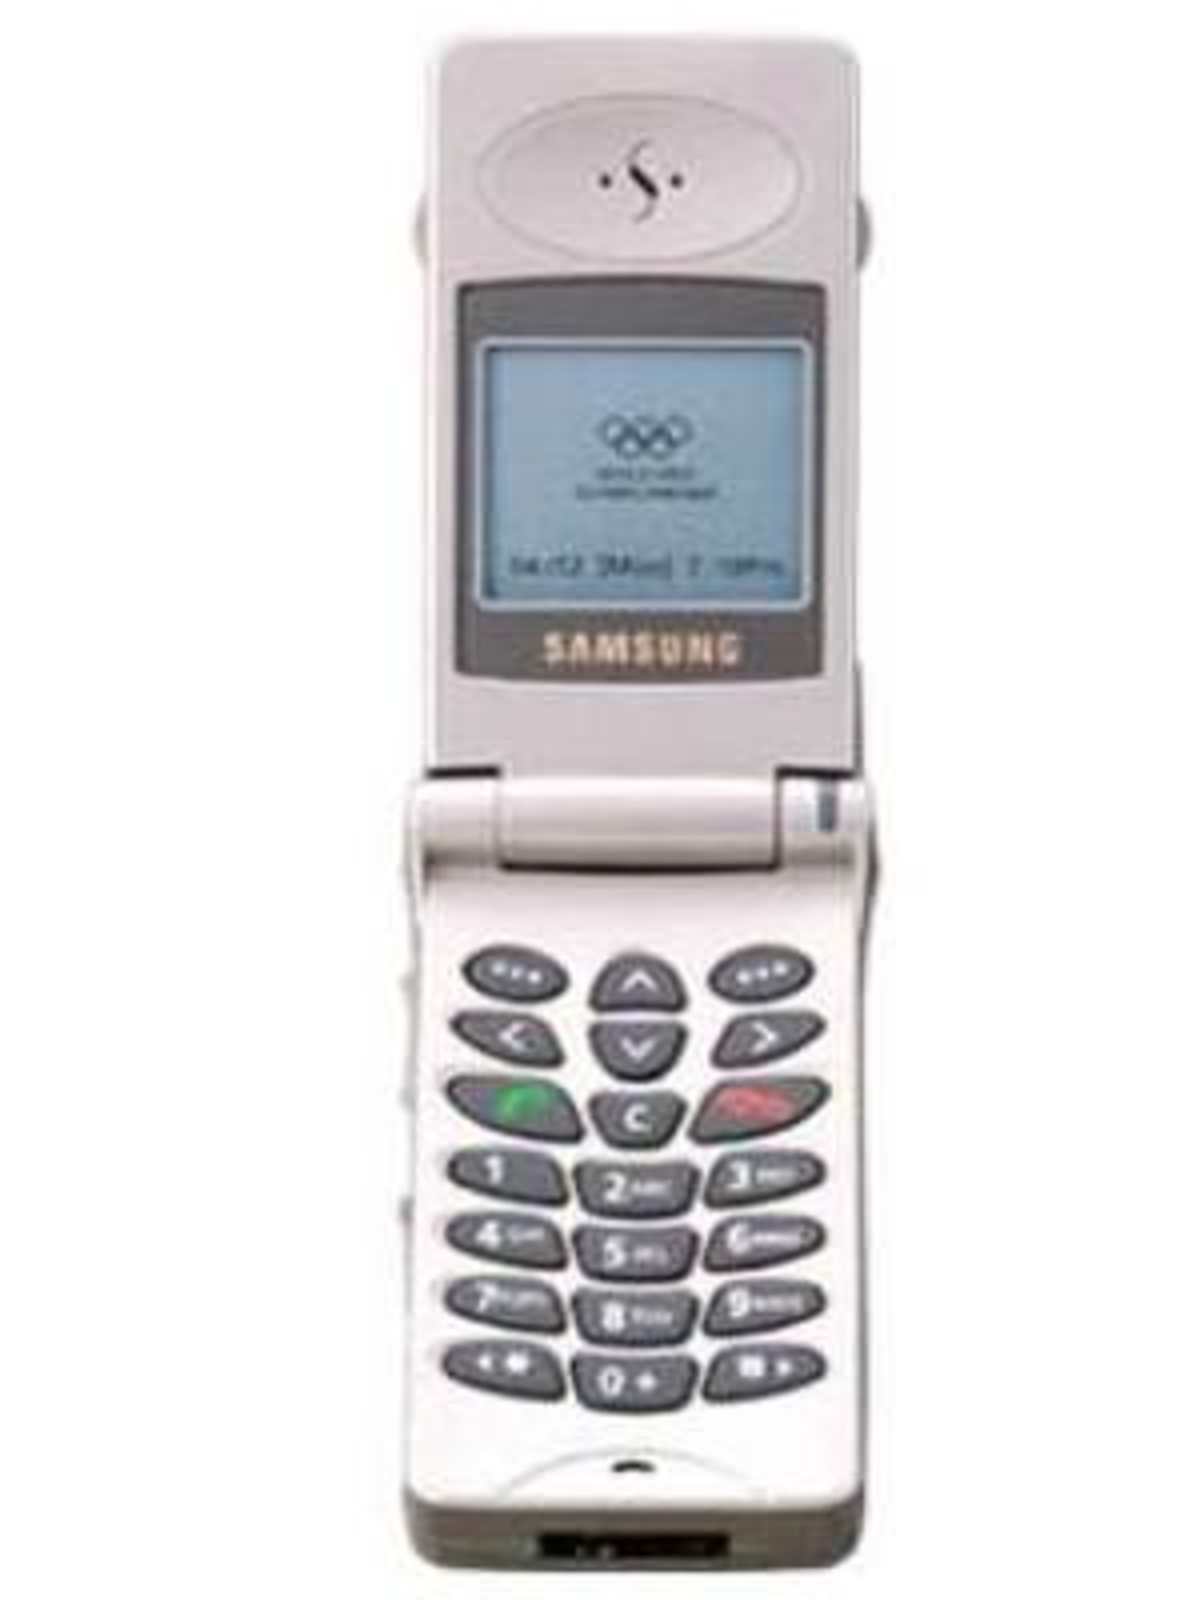 Samsung SGH 200